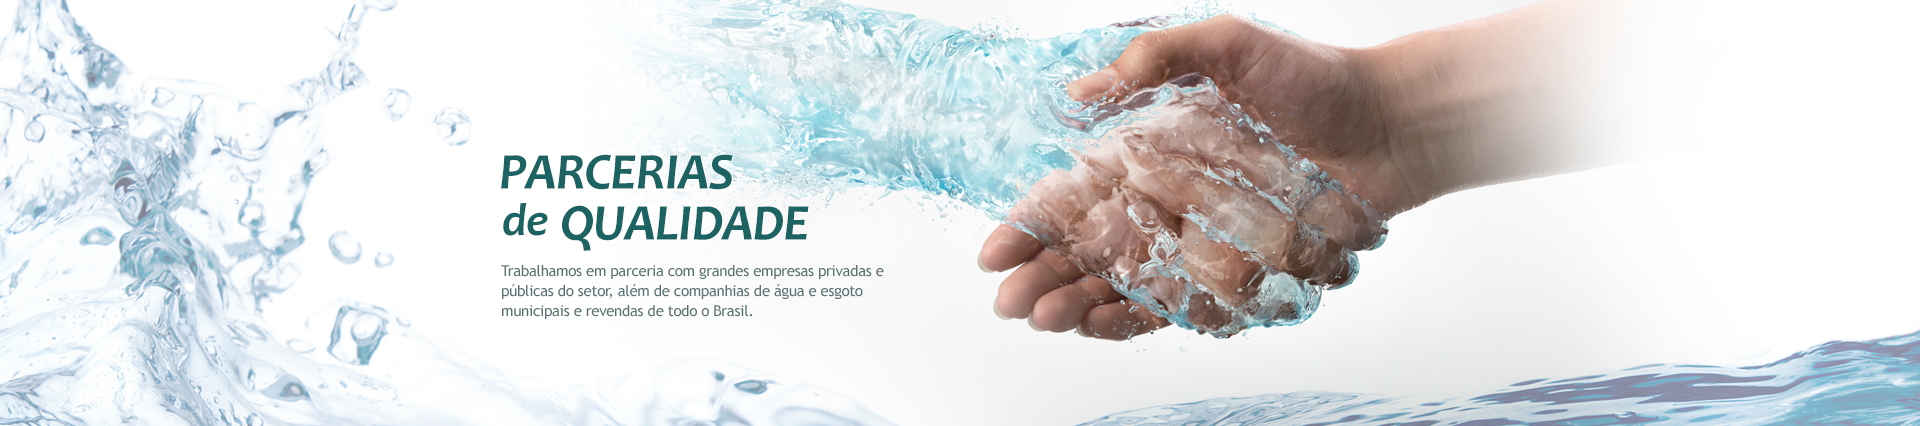 Parcerias de Qualidade - Trabalhamos em parceria com grandes empresas privadas e p�blicas do setor, al�m de companhias de �gua e esgoto municipais al�m de revendadas de todo o Brasil.